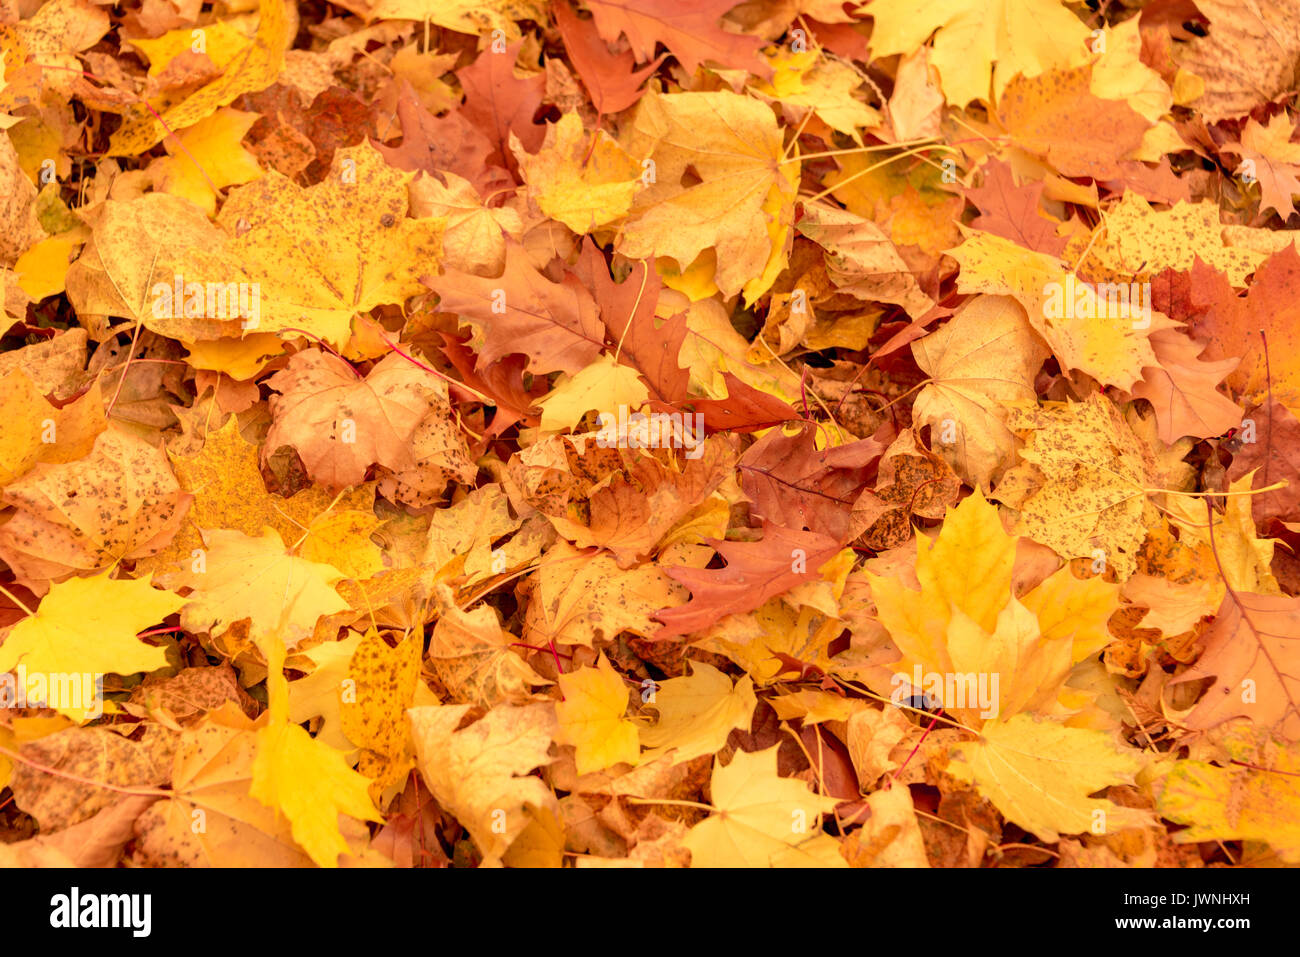 Vivace giallo e arancio autunno foglie di acero giacente sul terreno in una fitta moquette simbolico del mutare delle stagioni Foto Stock